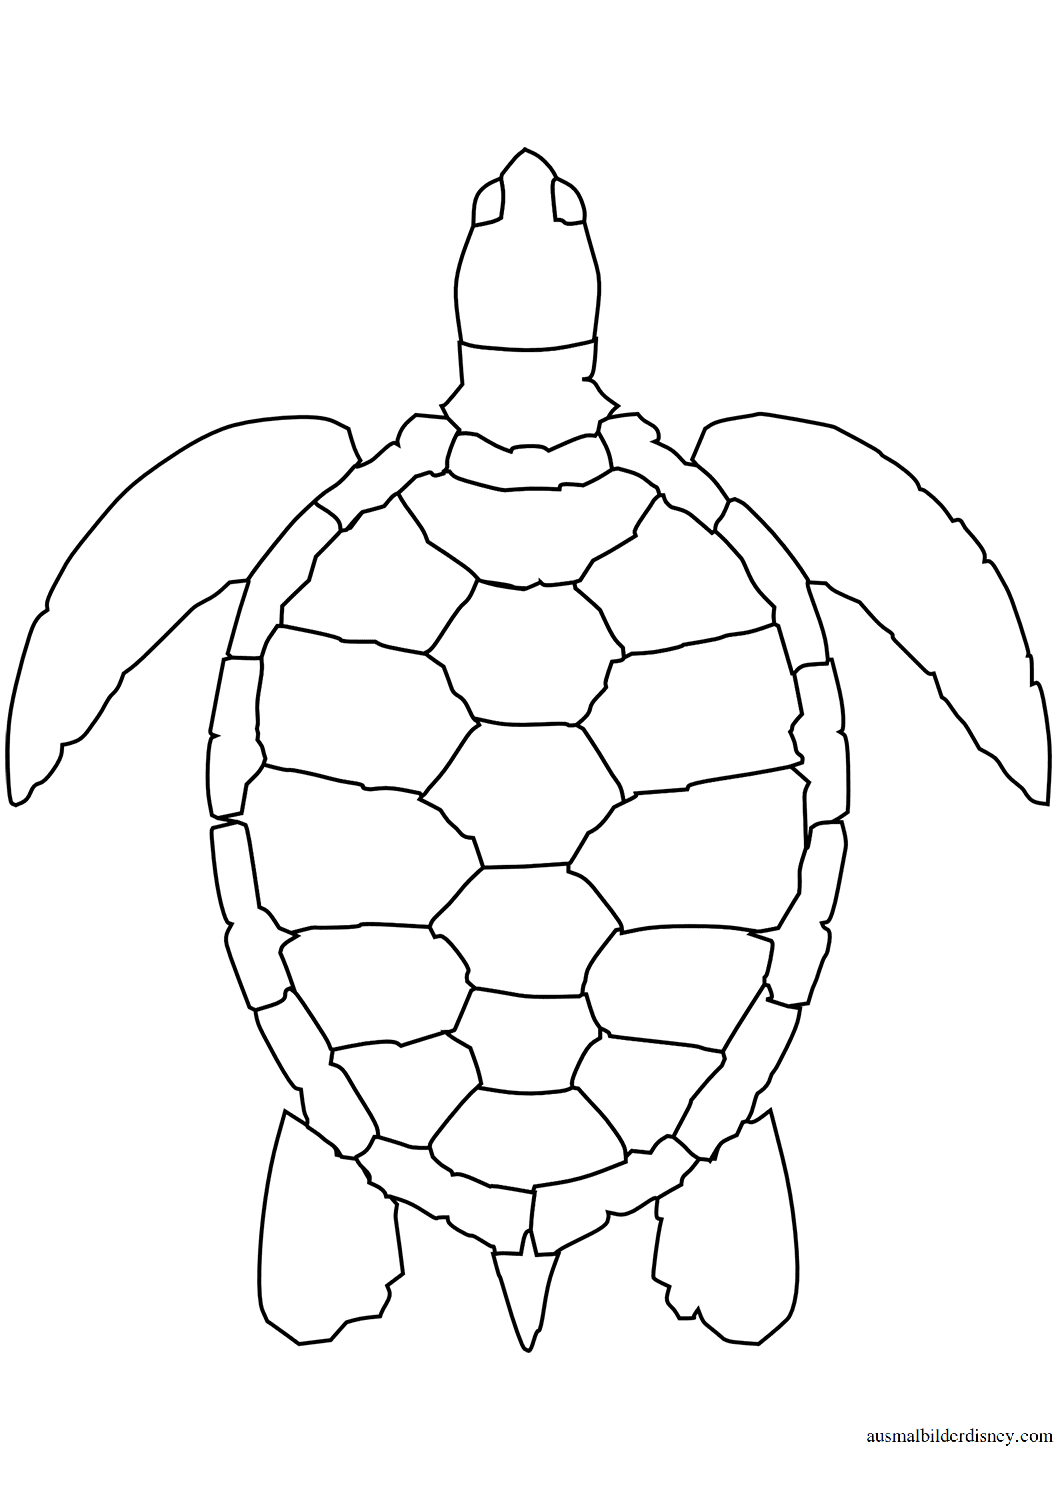 Ausmalbild See Schildkröte Kostenlos Zum Ausdrucken für Ausmalbild Schildkröte